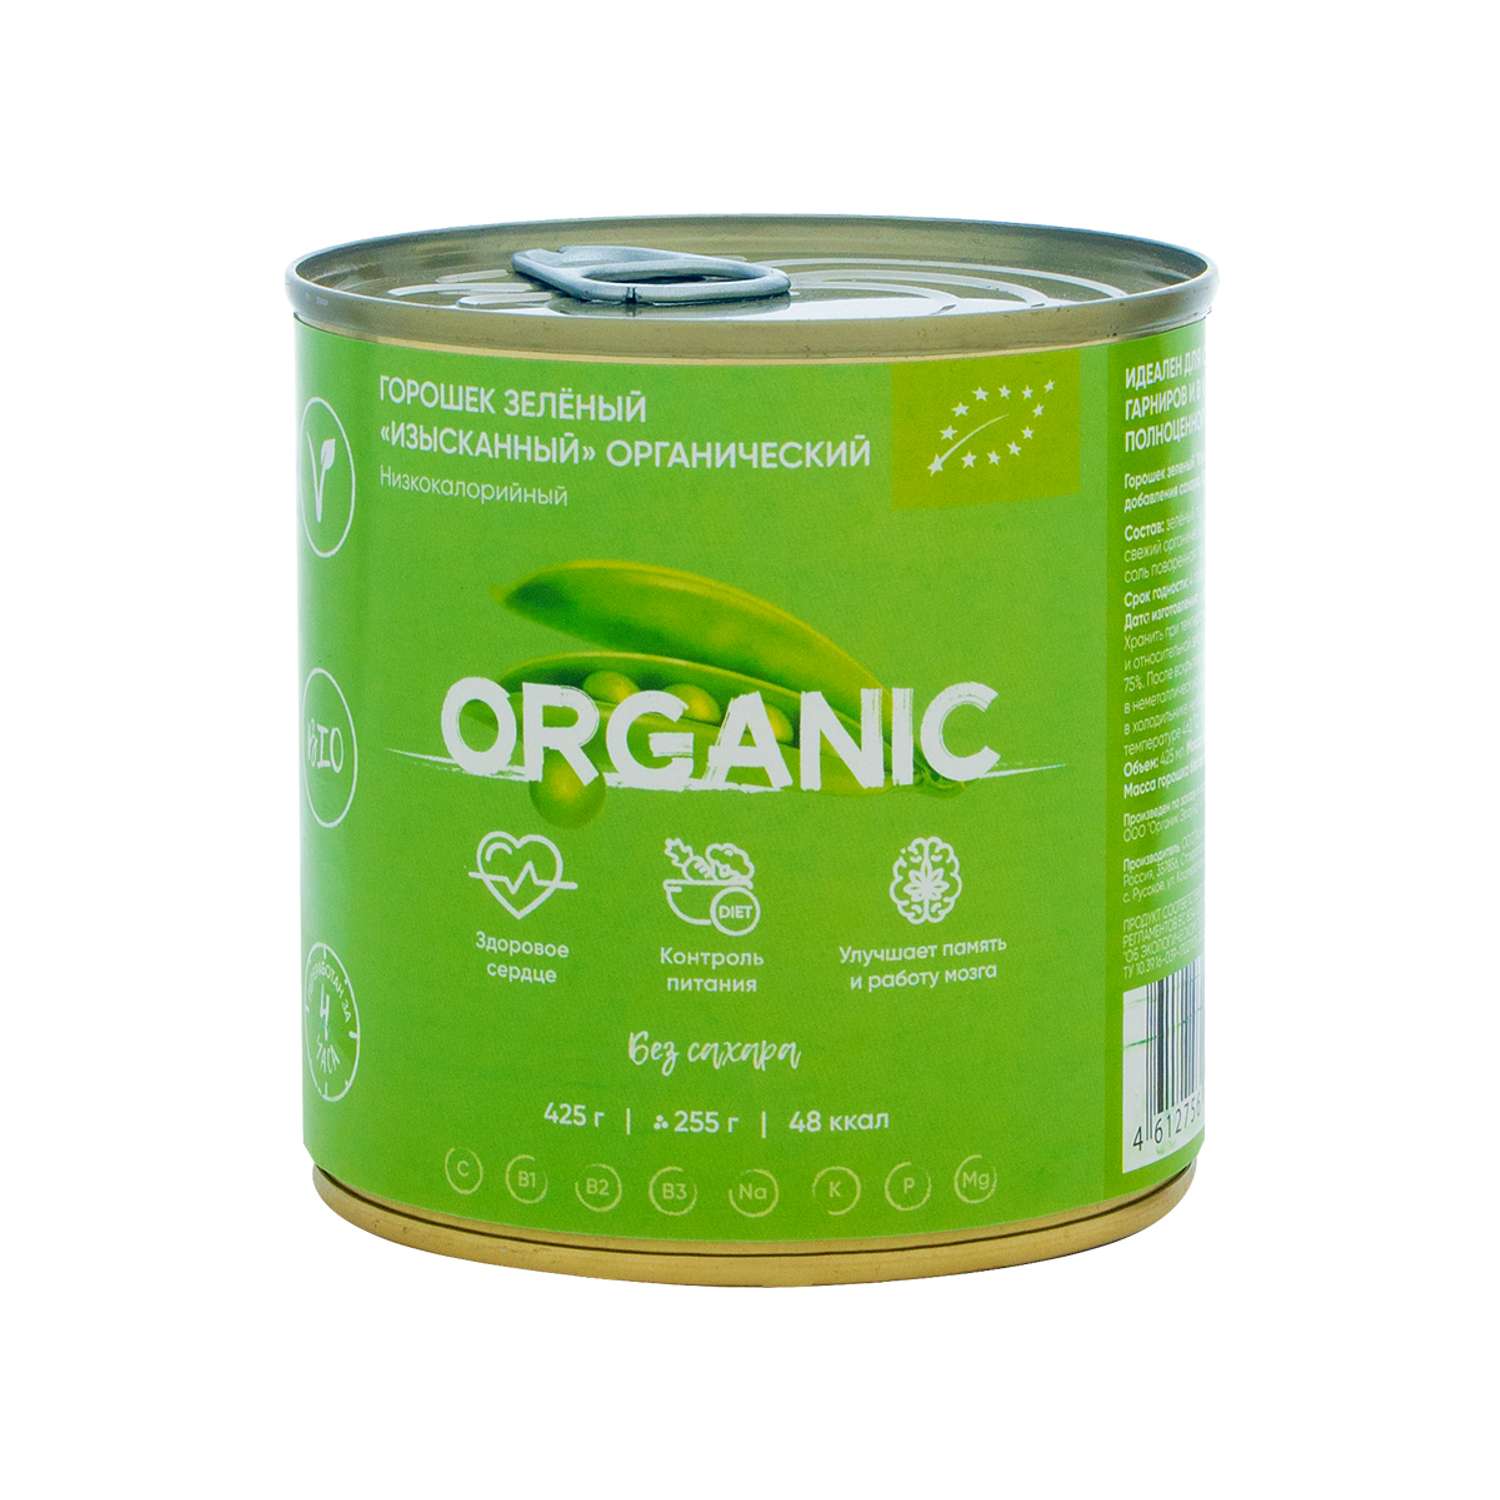 Горошек зеленый Organic Around органический 425 г - фото 1